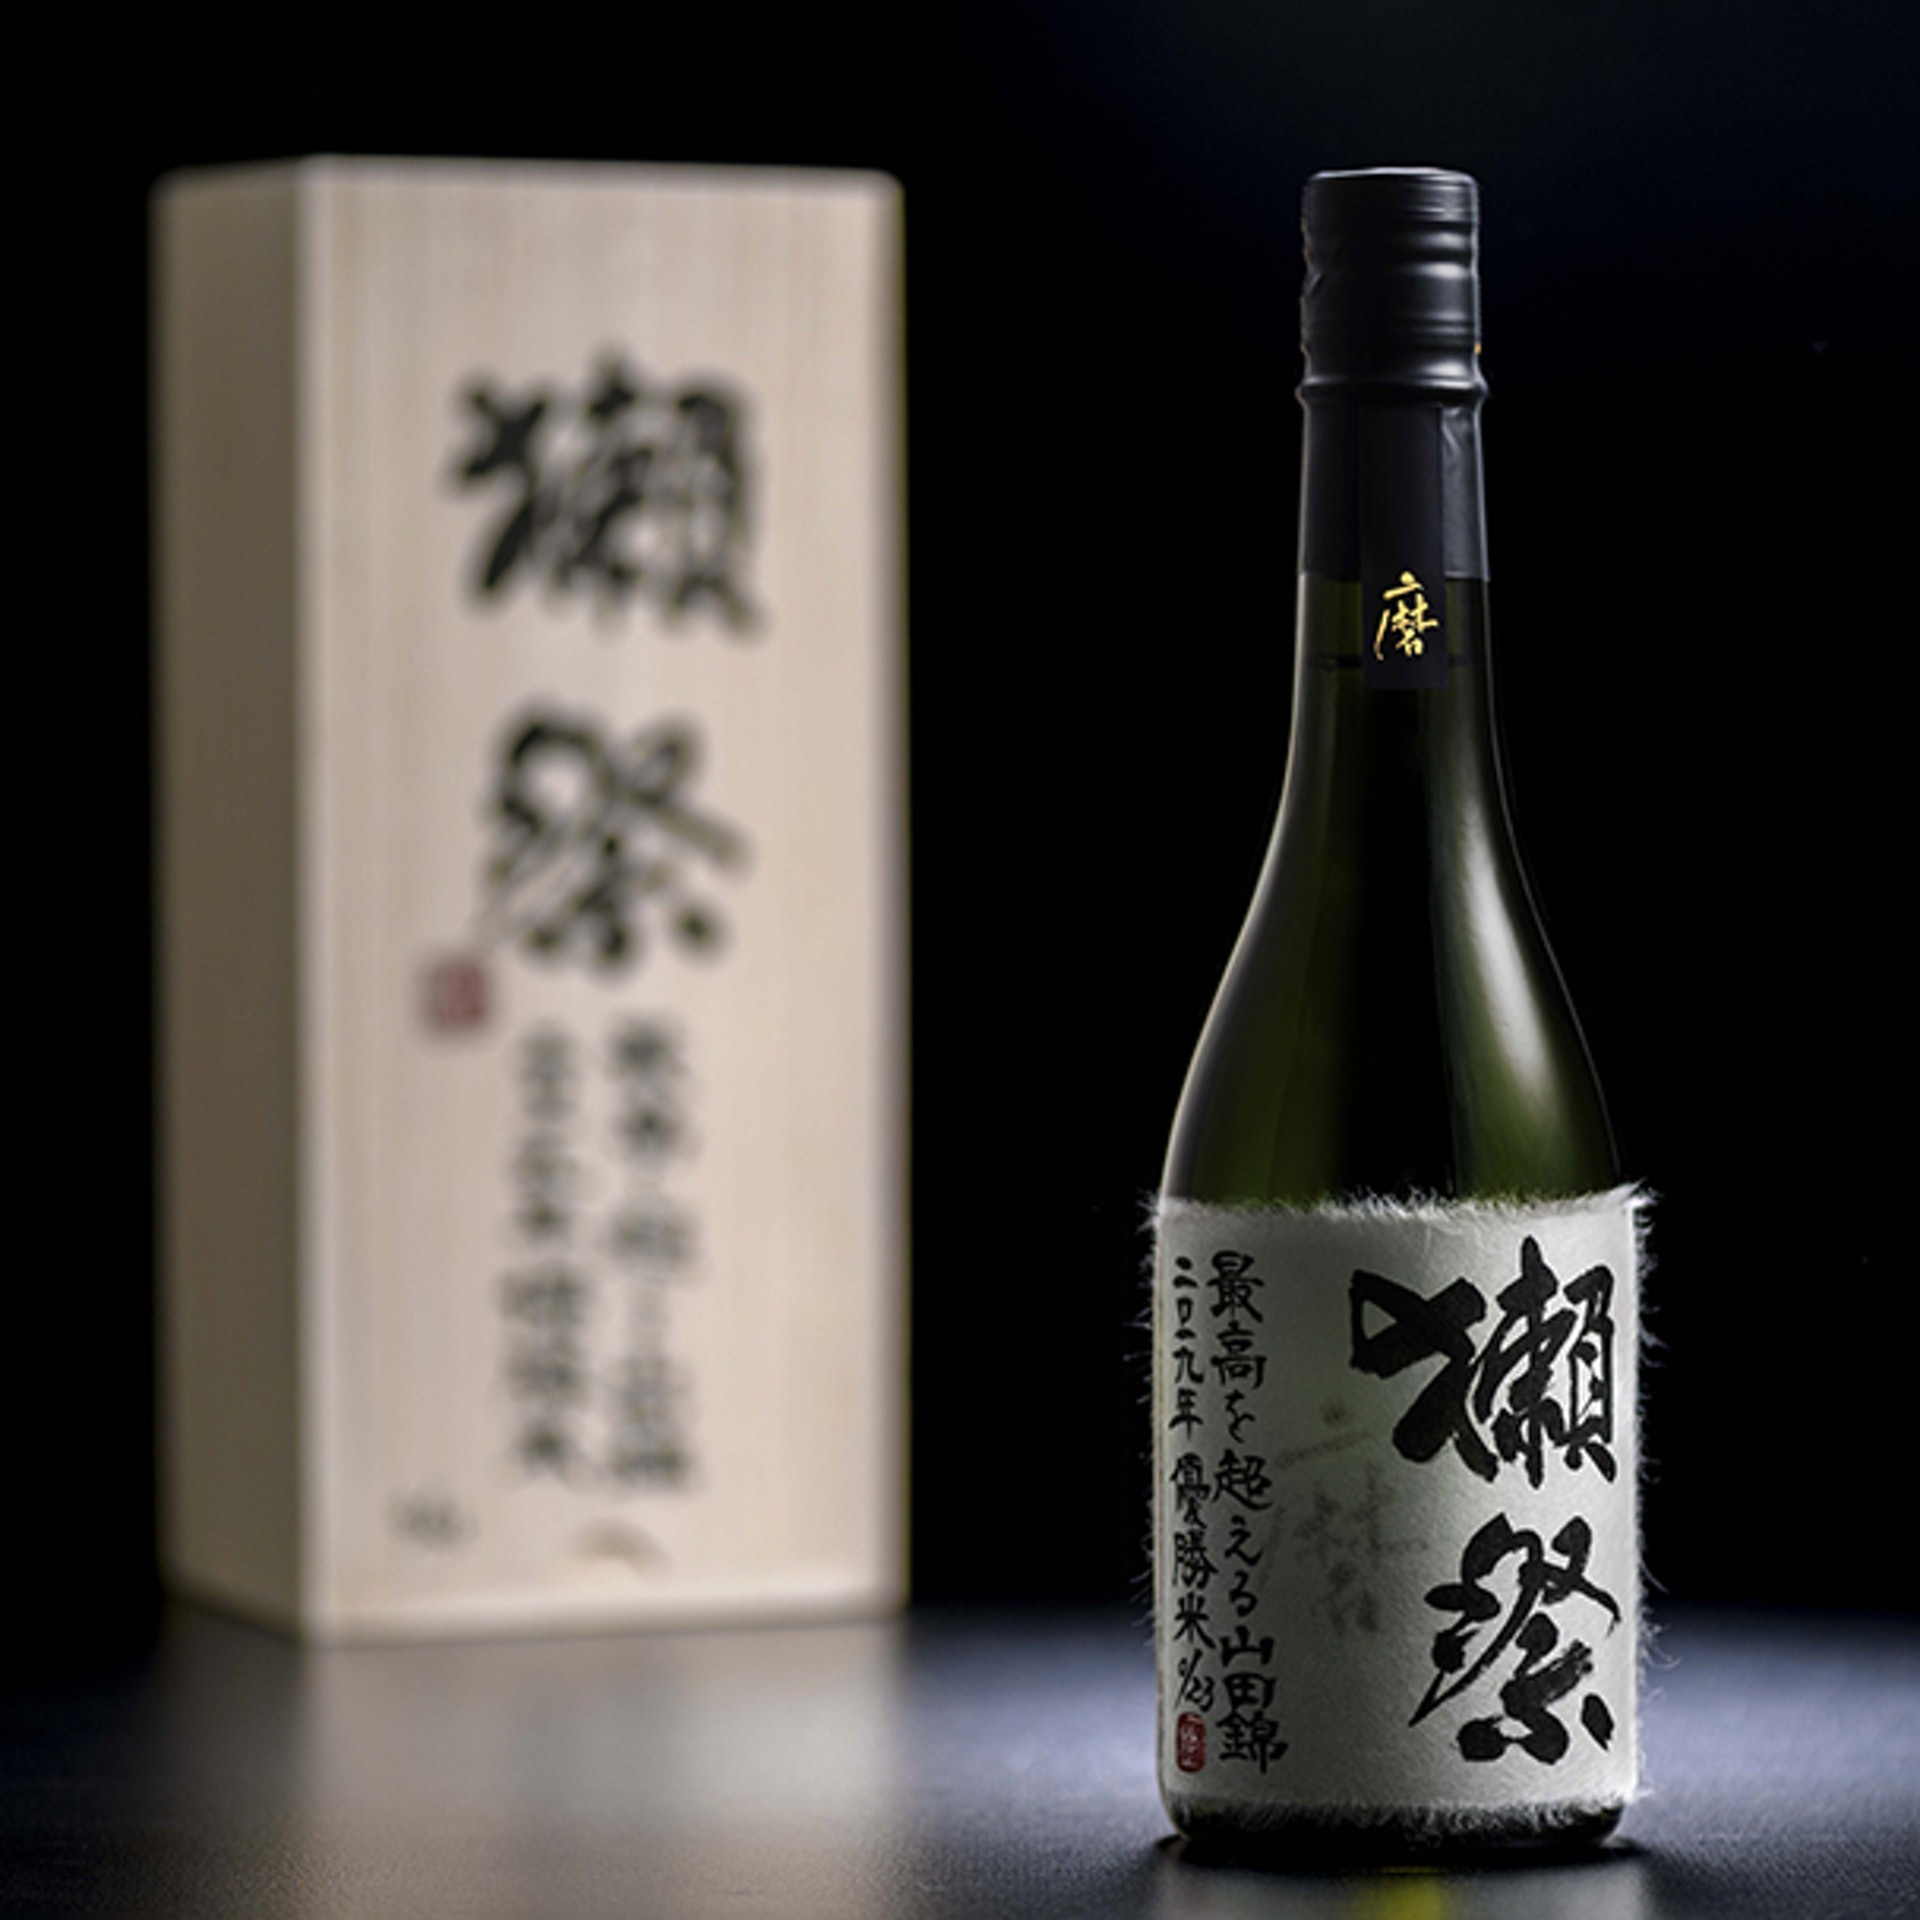 日本清酒】蘇富比首次拍賣「獺祭超越極致」 23這個數字的奧秘